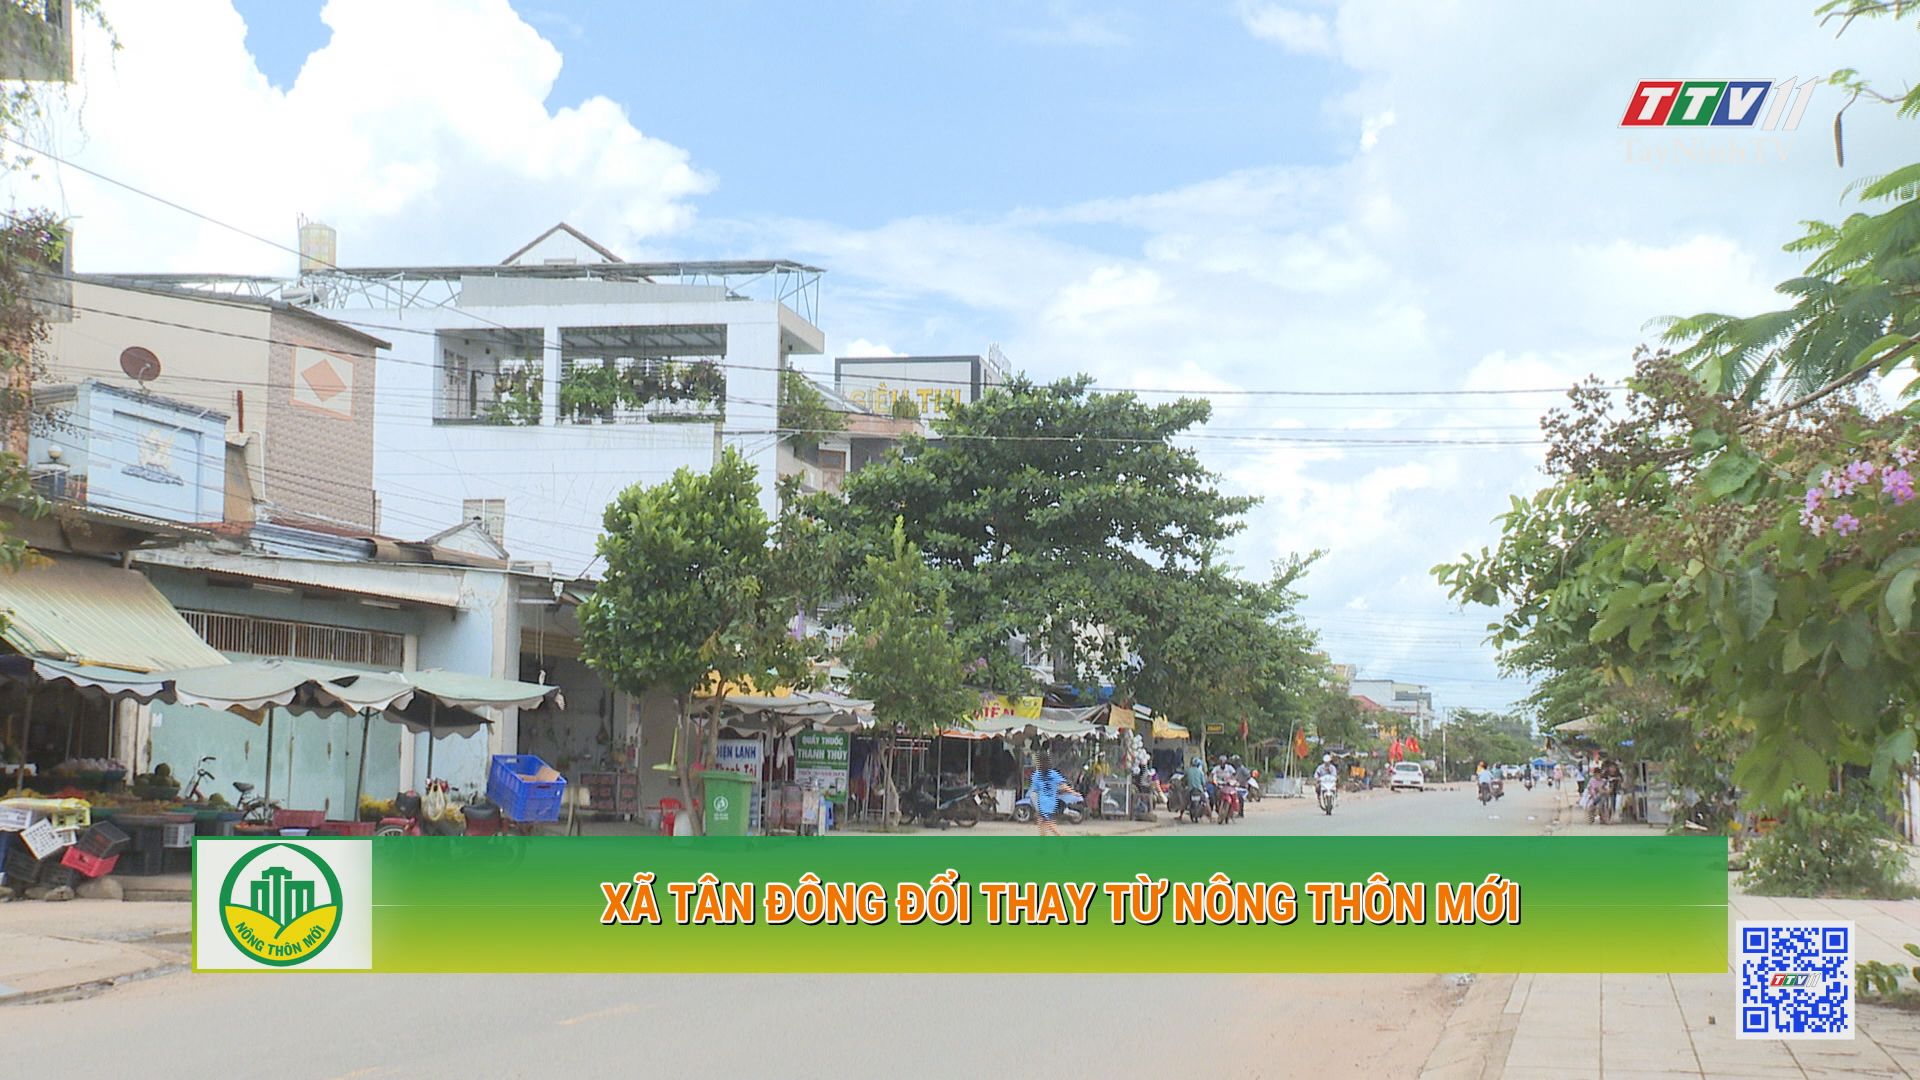 Xã Tân Đông đổi thay từ nông thôn mới | Tây Ninh xây dựng nông thôn mới | TayNinhTV